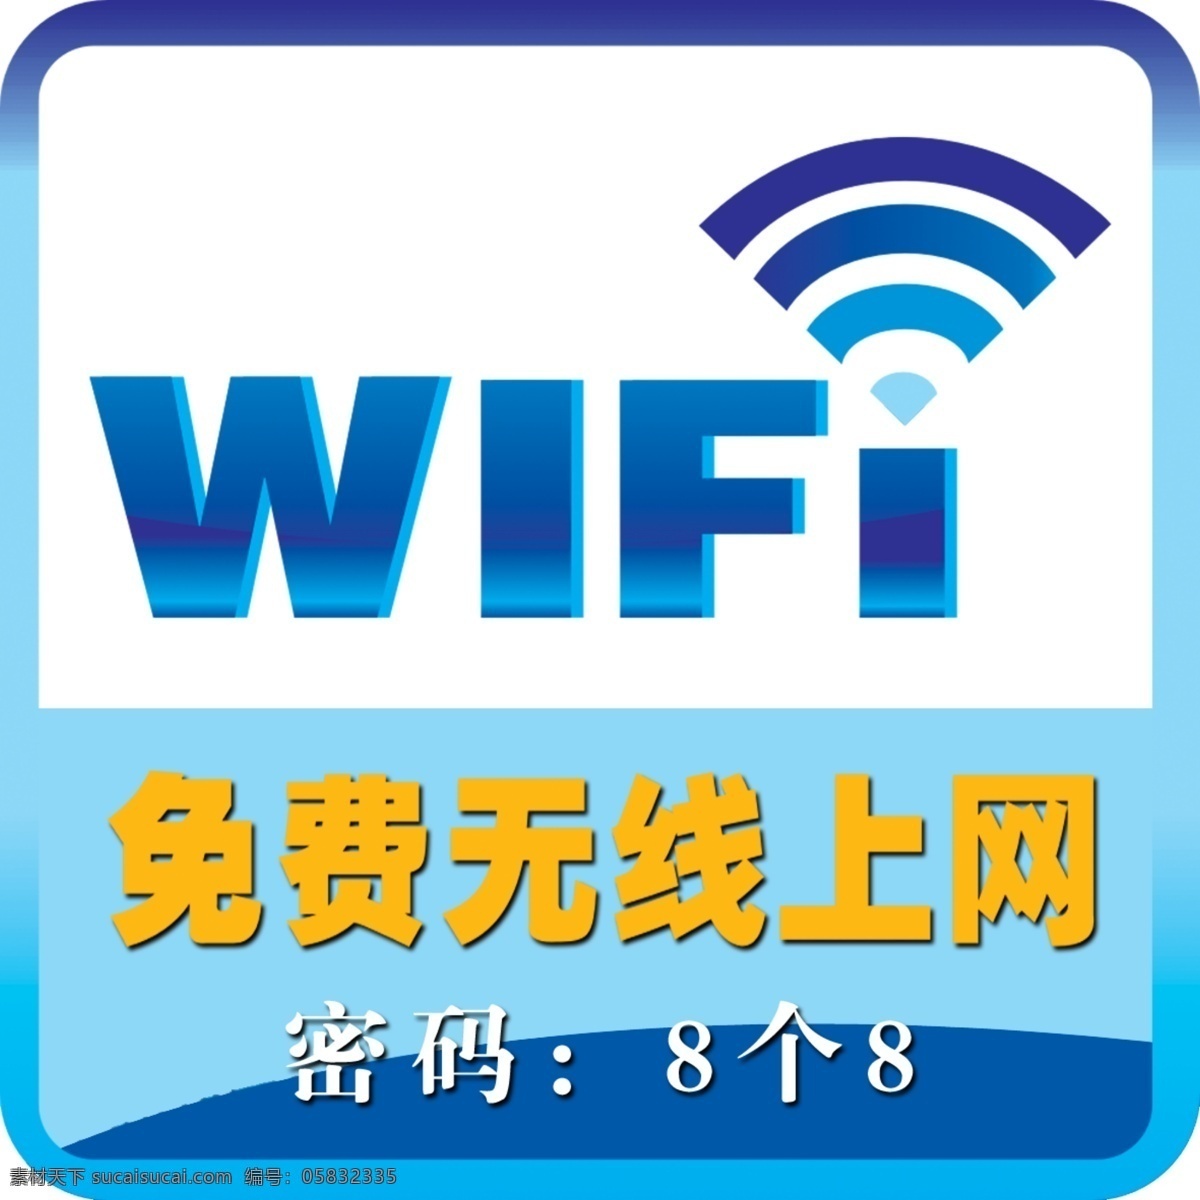 免费上网 免费 上网 标志 wifi 网络